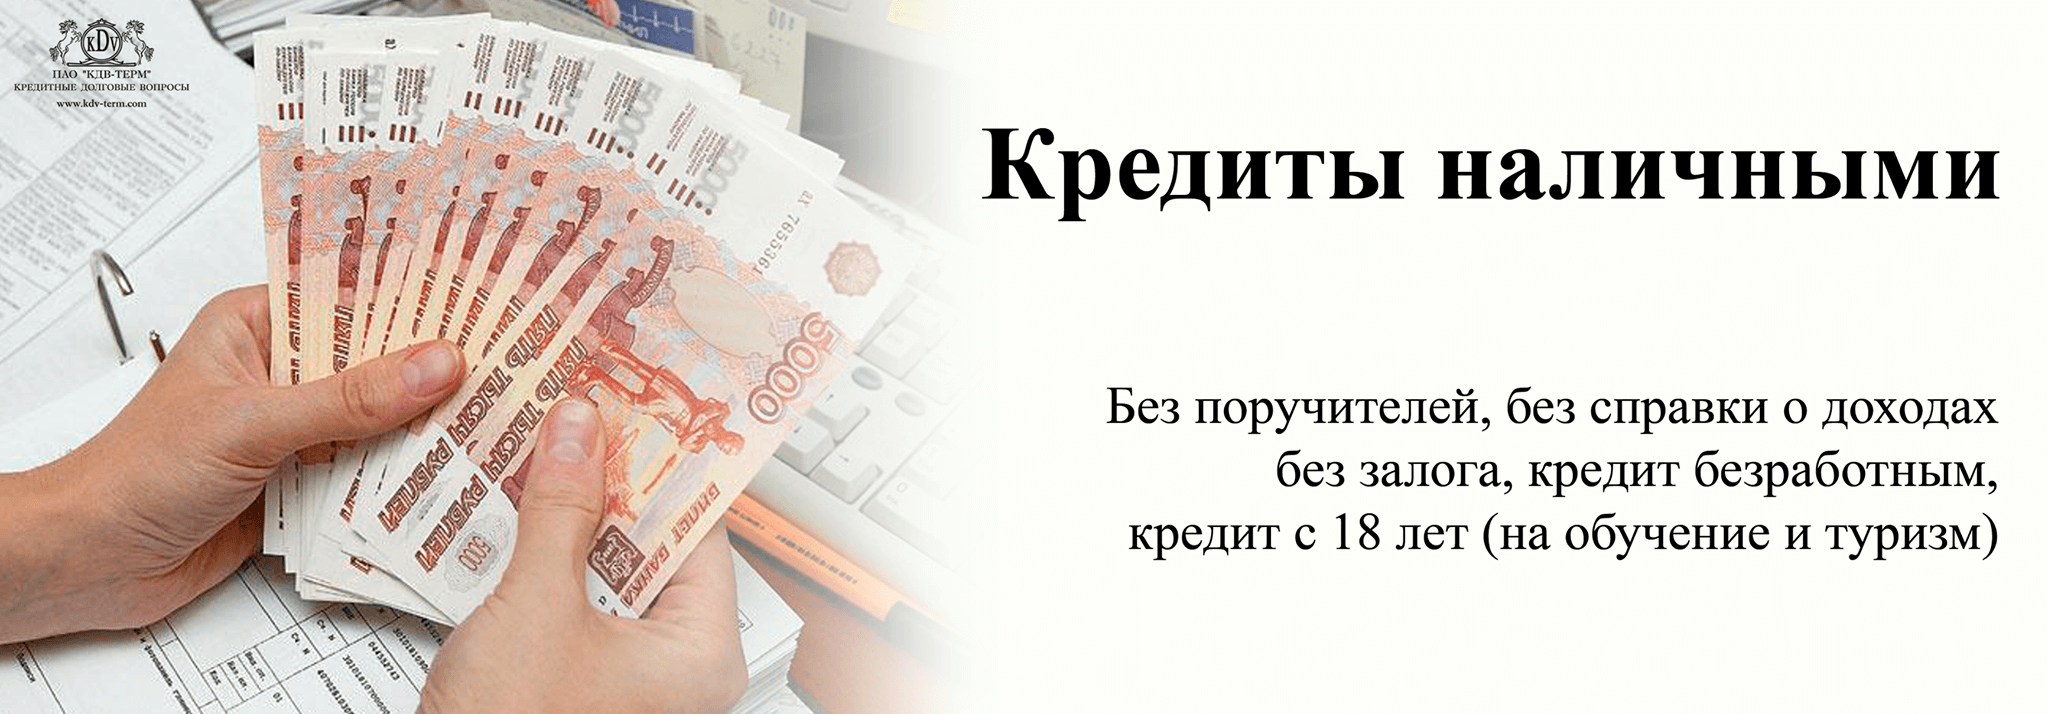 Займы наличными в Прокопьевске без проверок по паспорту студентам с 18 лет